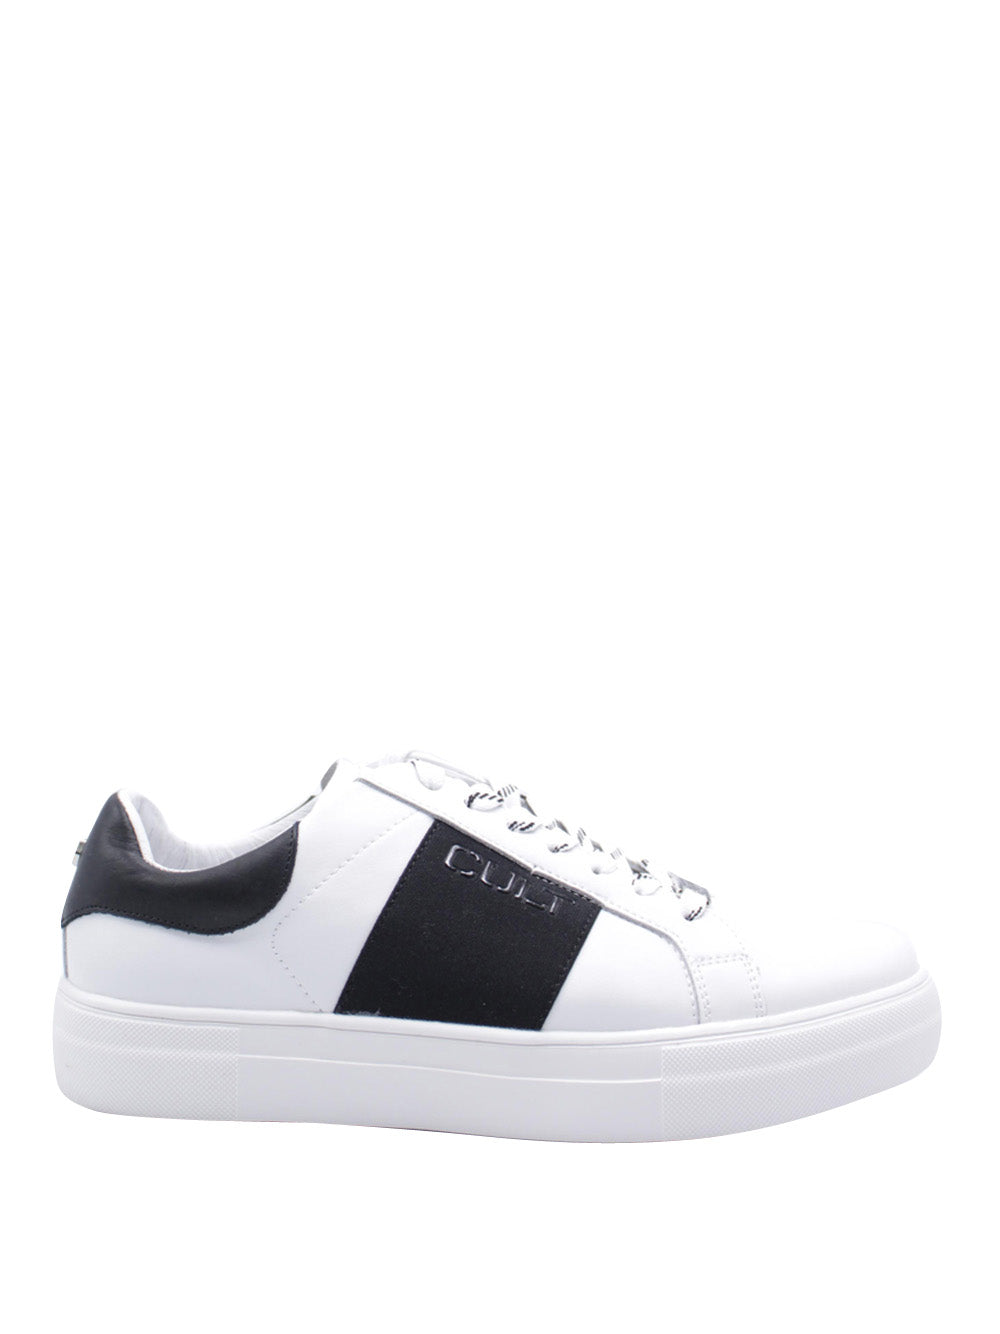 CULT Sneakers Uomo - Bianco modello CLM363701